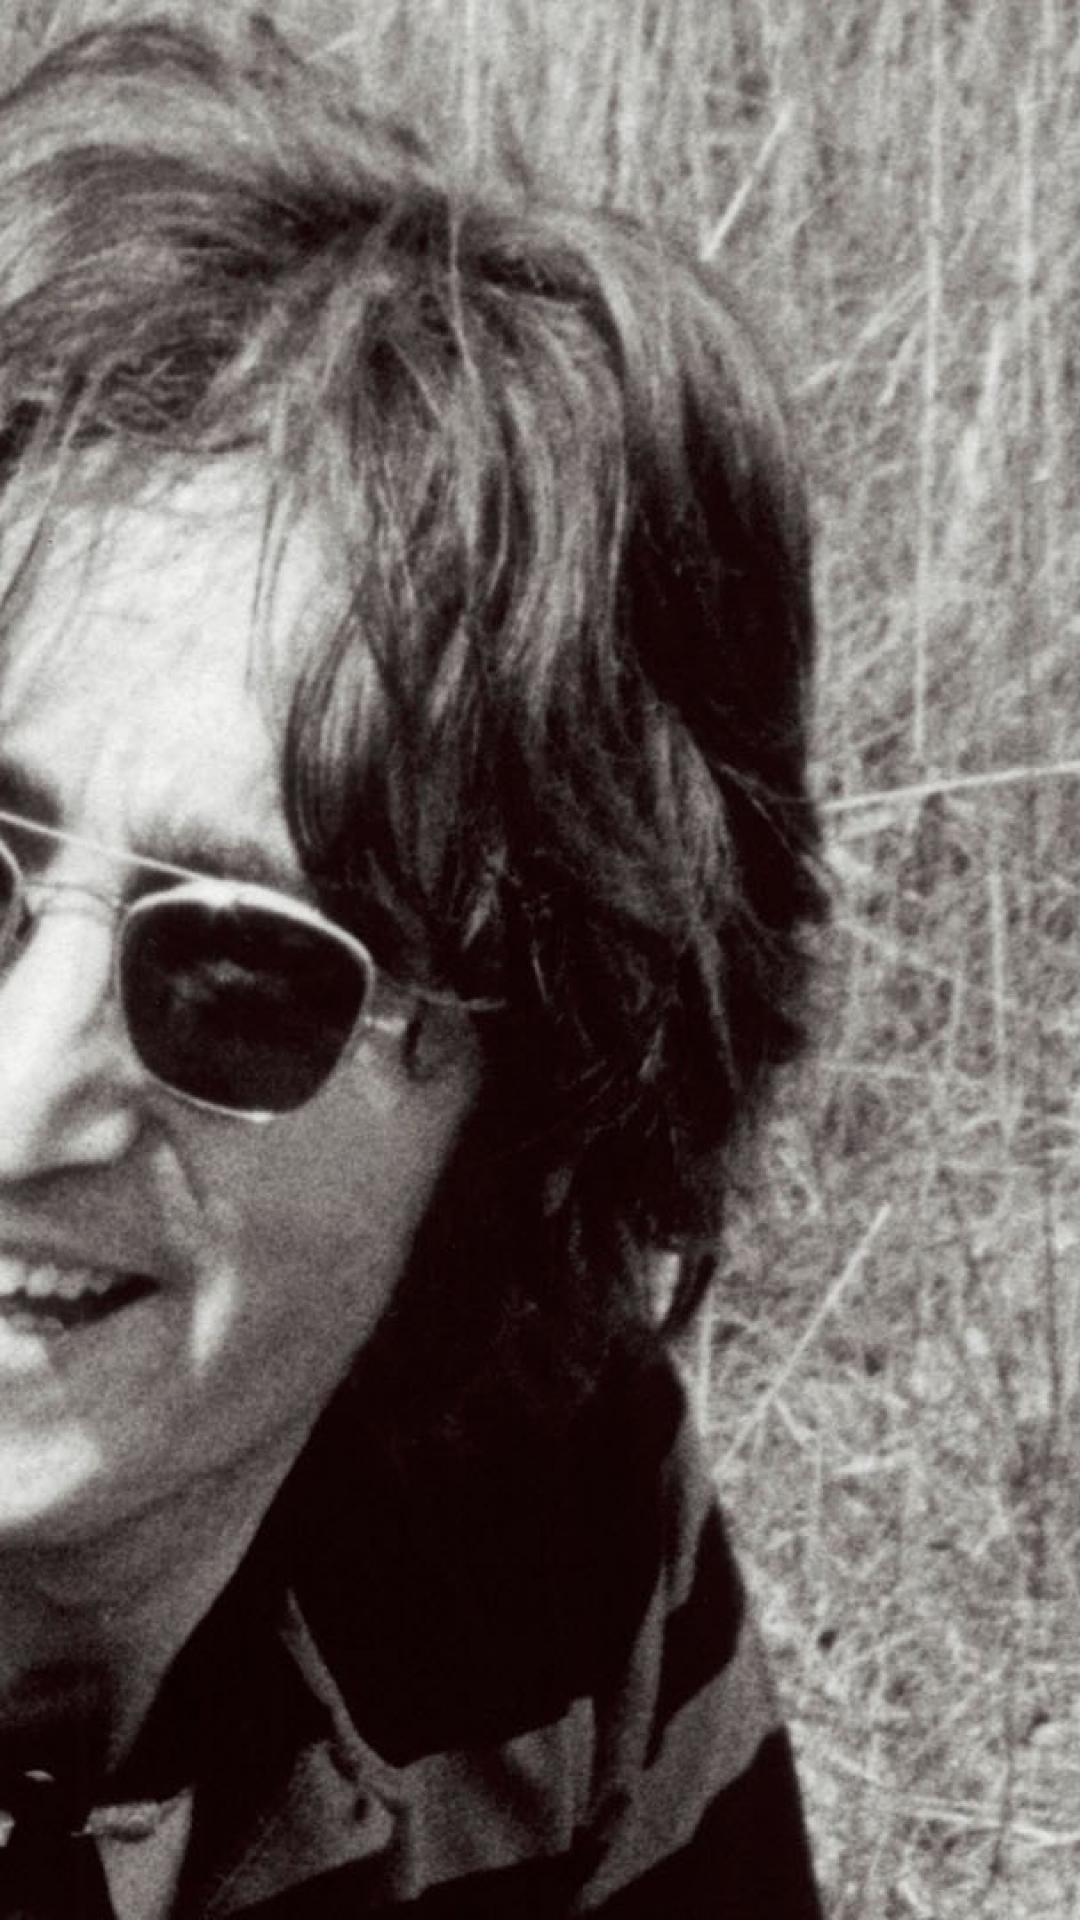 John Lennon beatles musician singer songwriter HD phone wallpaper   Peakpx